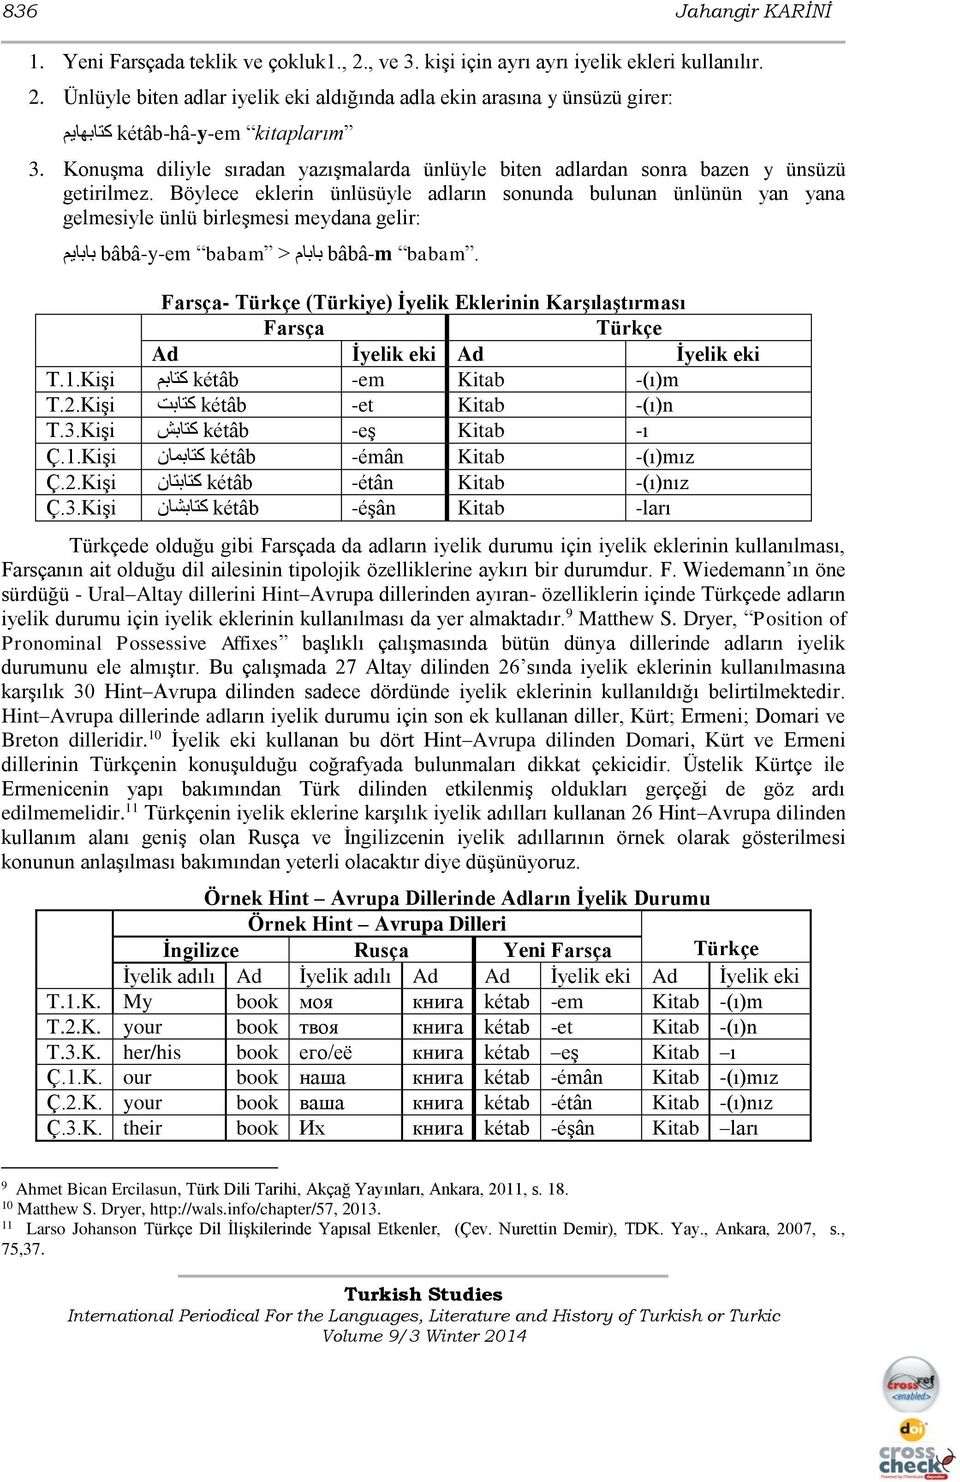 turk fars dil iliskileri farscada iyelik eklerinin kullanimi ozet pdf free download